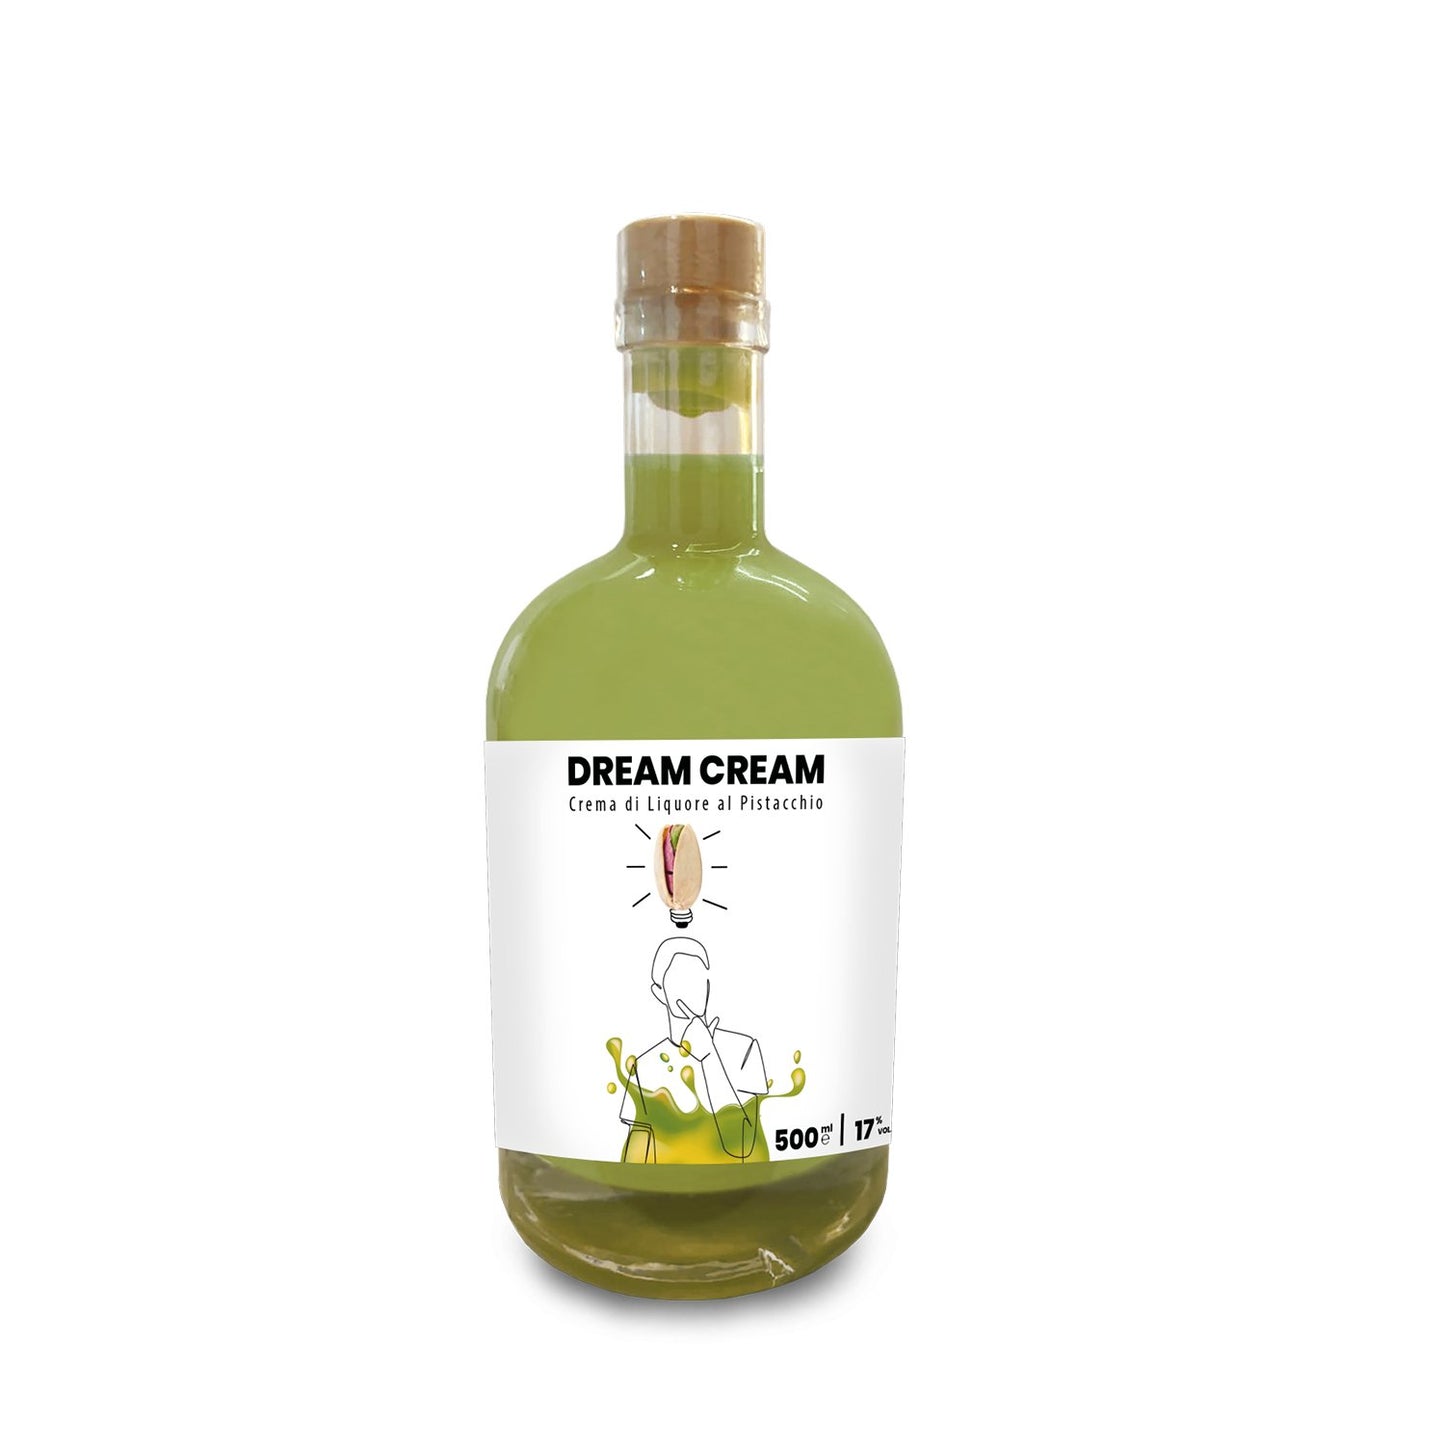 Dream Cream al Pistacchio - Distillerie dell’Etna dei F.lli Russo srl - Maravigghia for Sicily